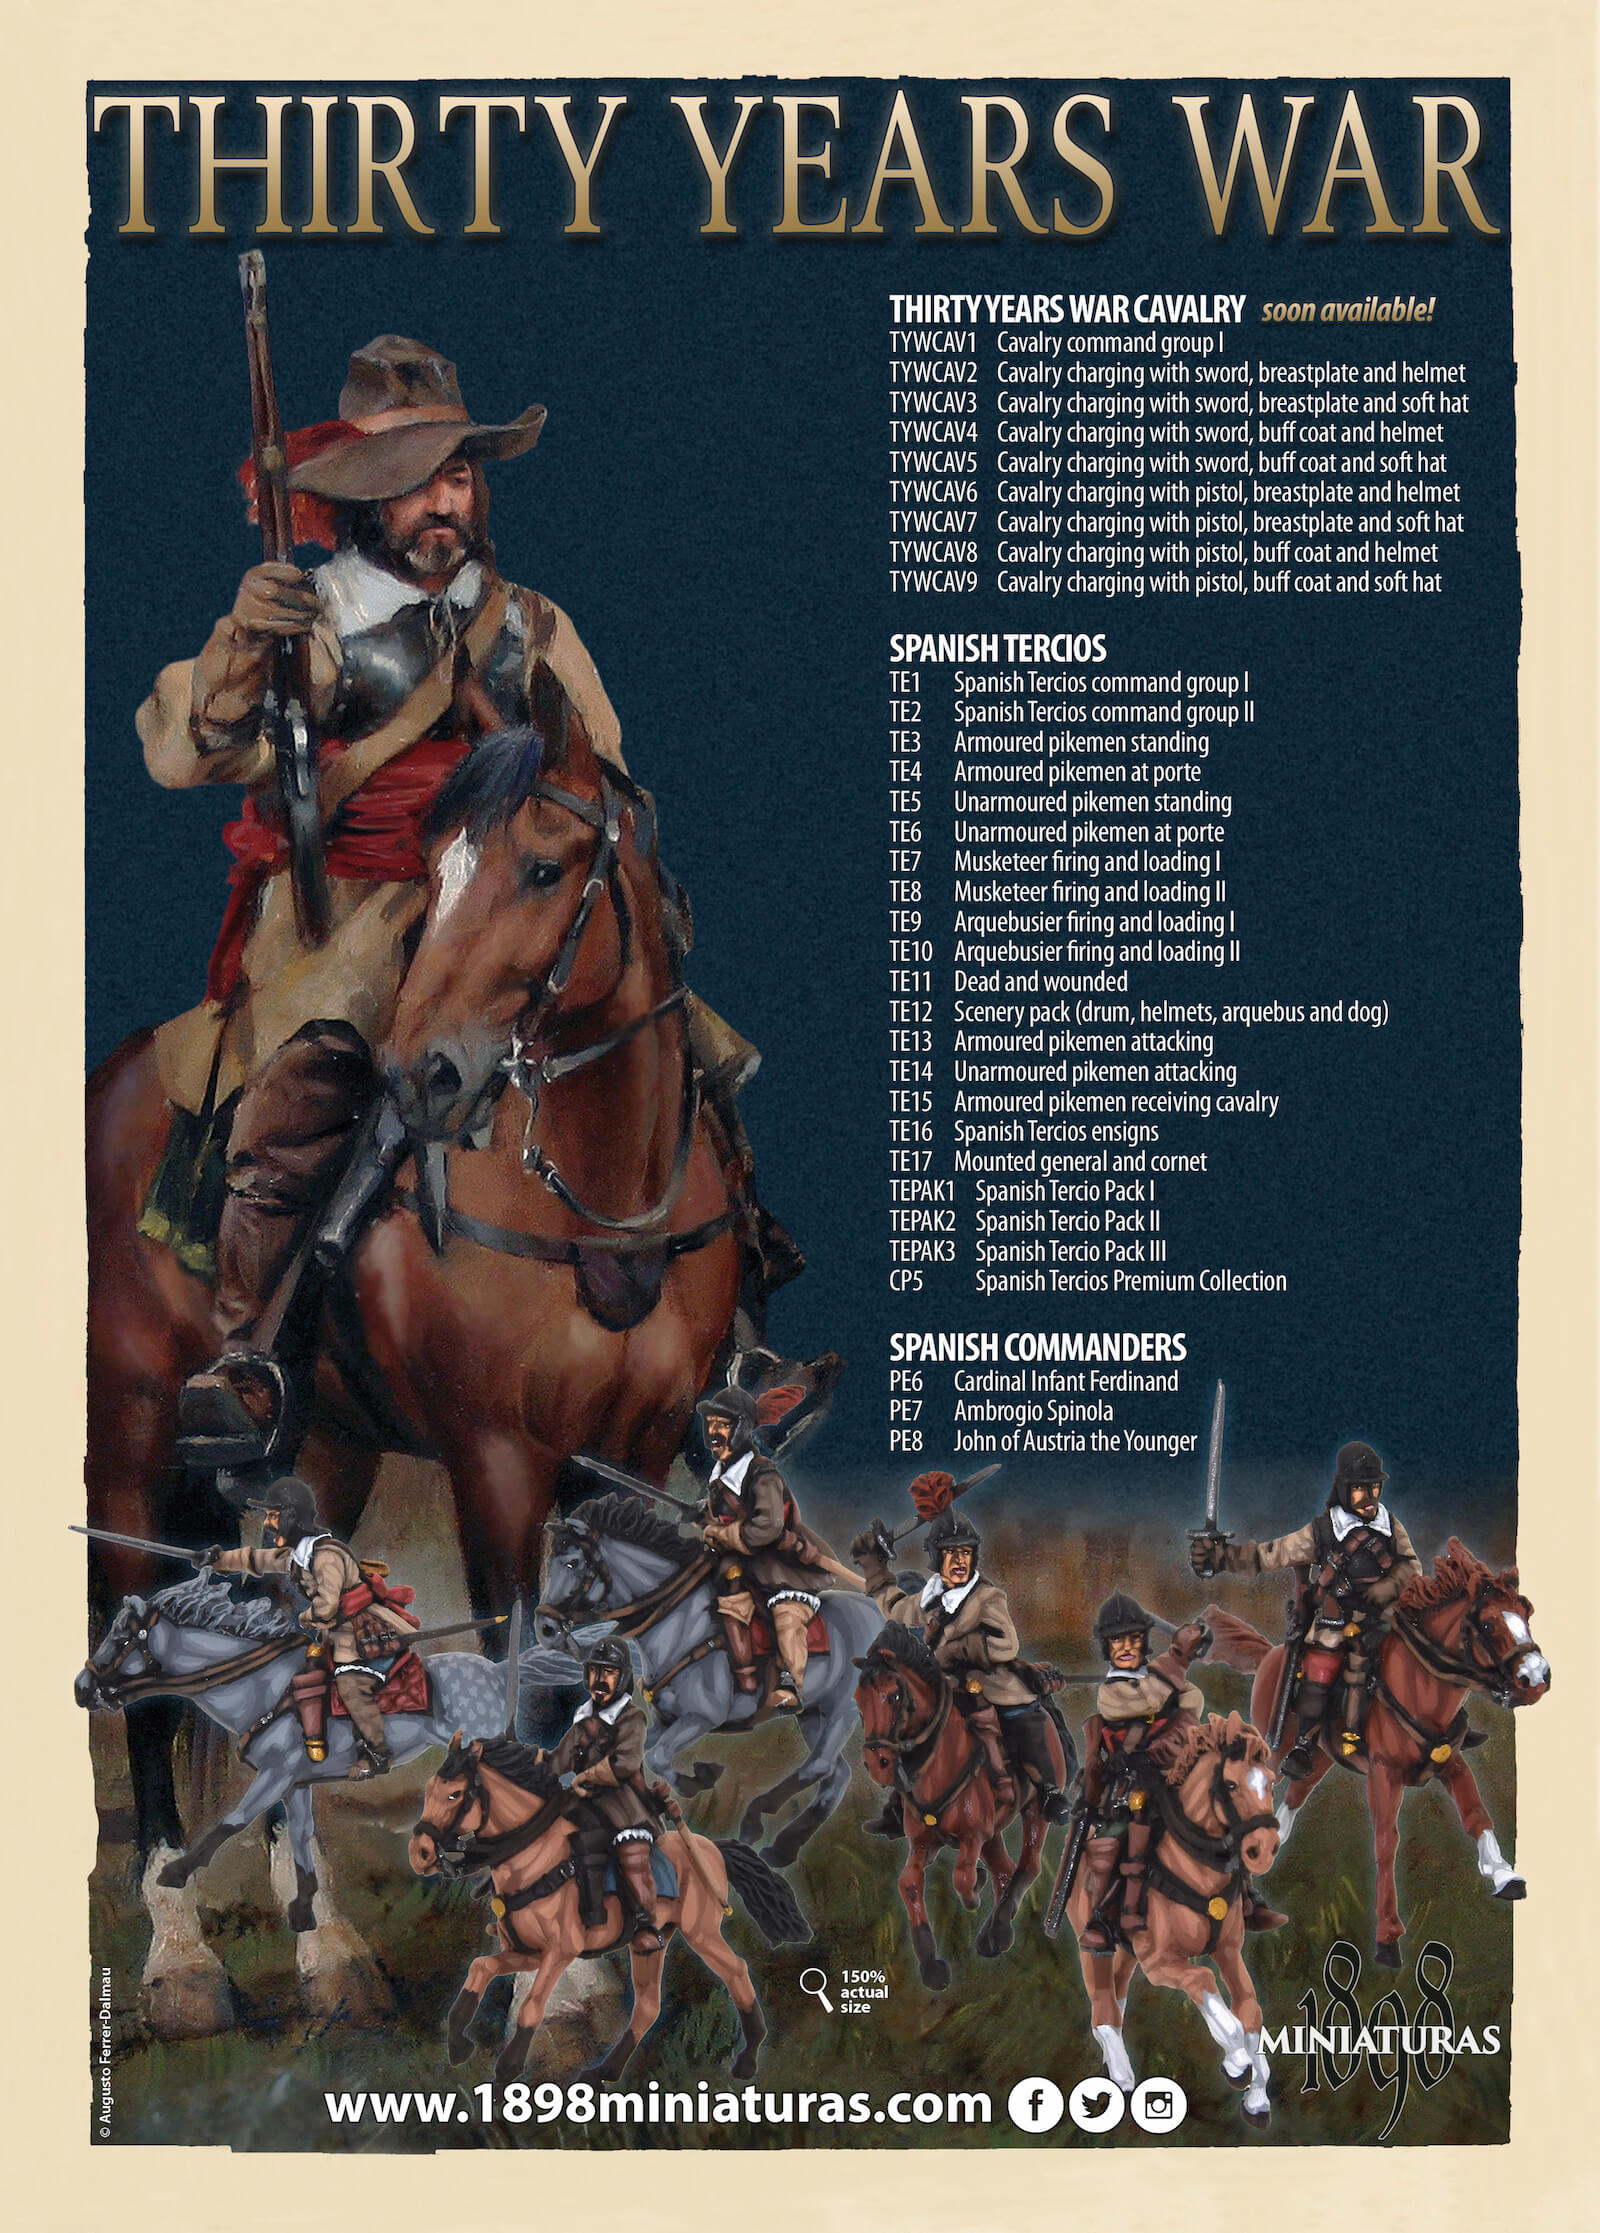 Thirty Years War cavalry miniatures 1898 miniaturas 28mm caballería guerra de los treinta años